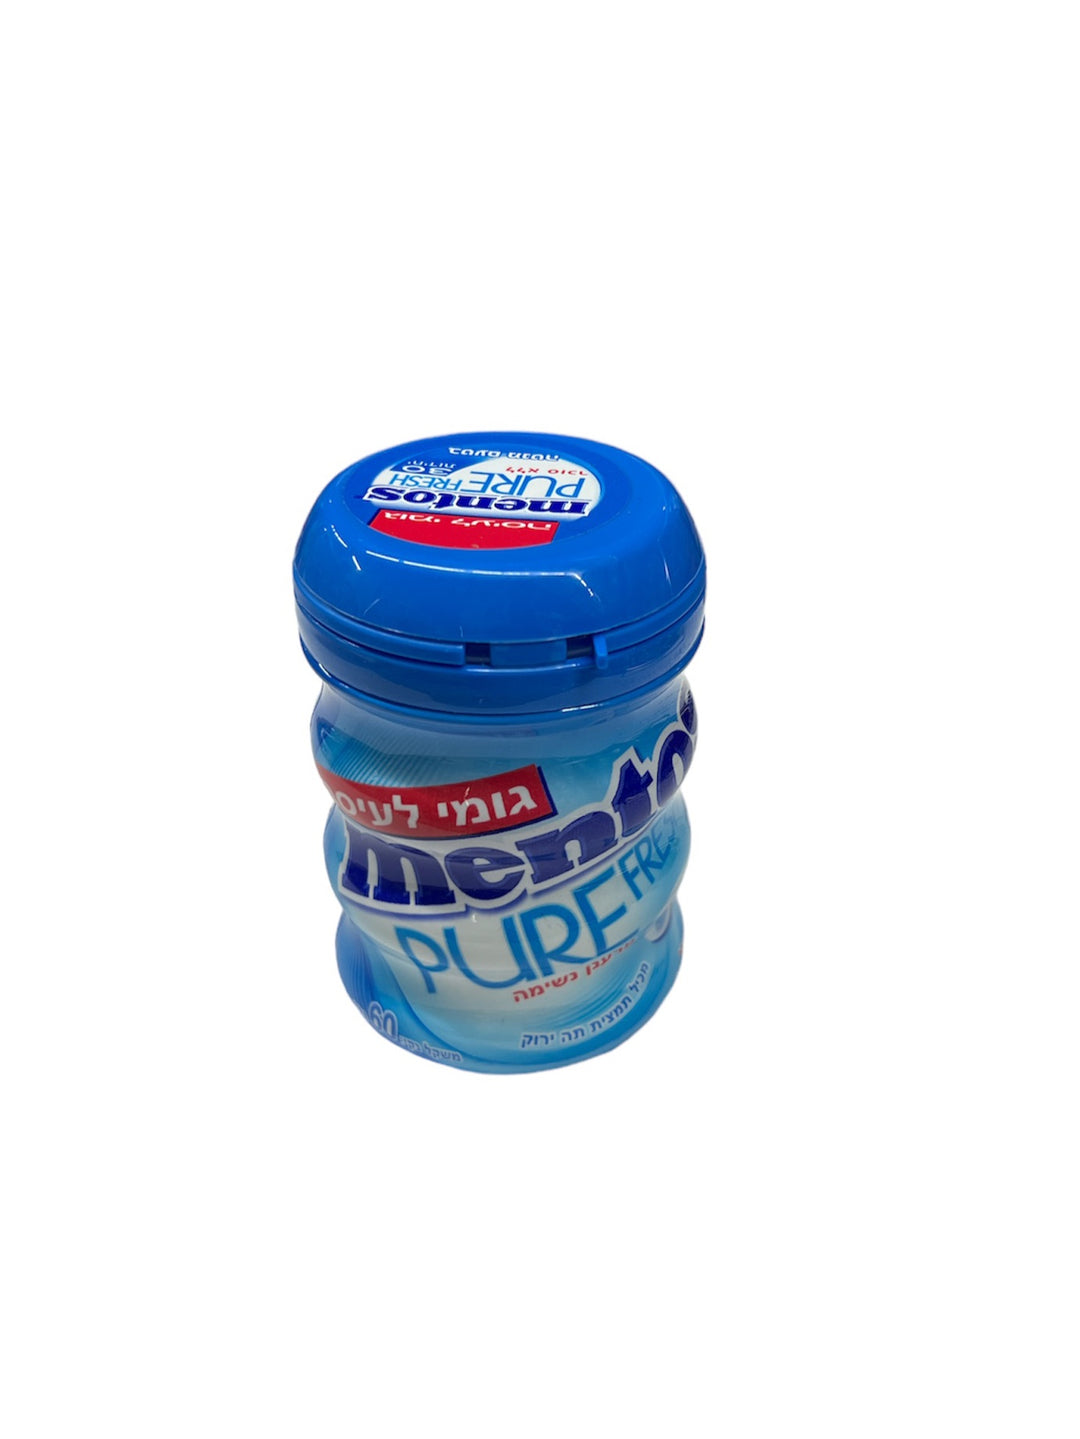 Mento Michelin Fresh Mint Gum 30pc 6/60g